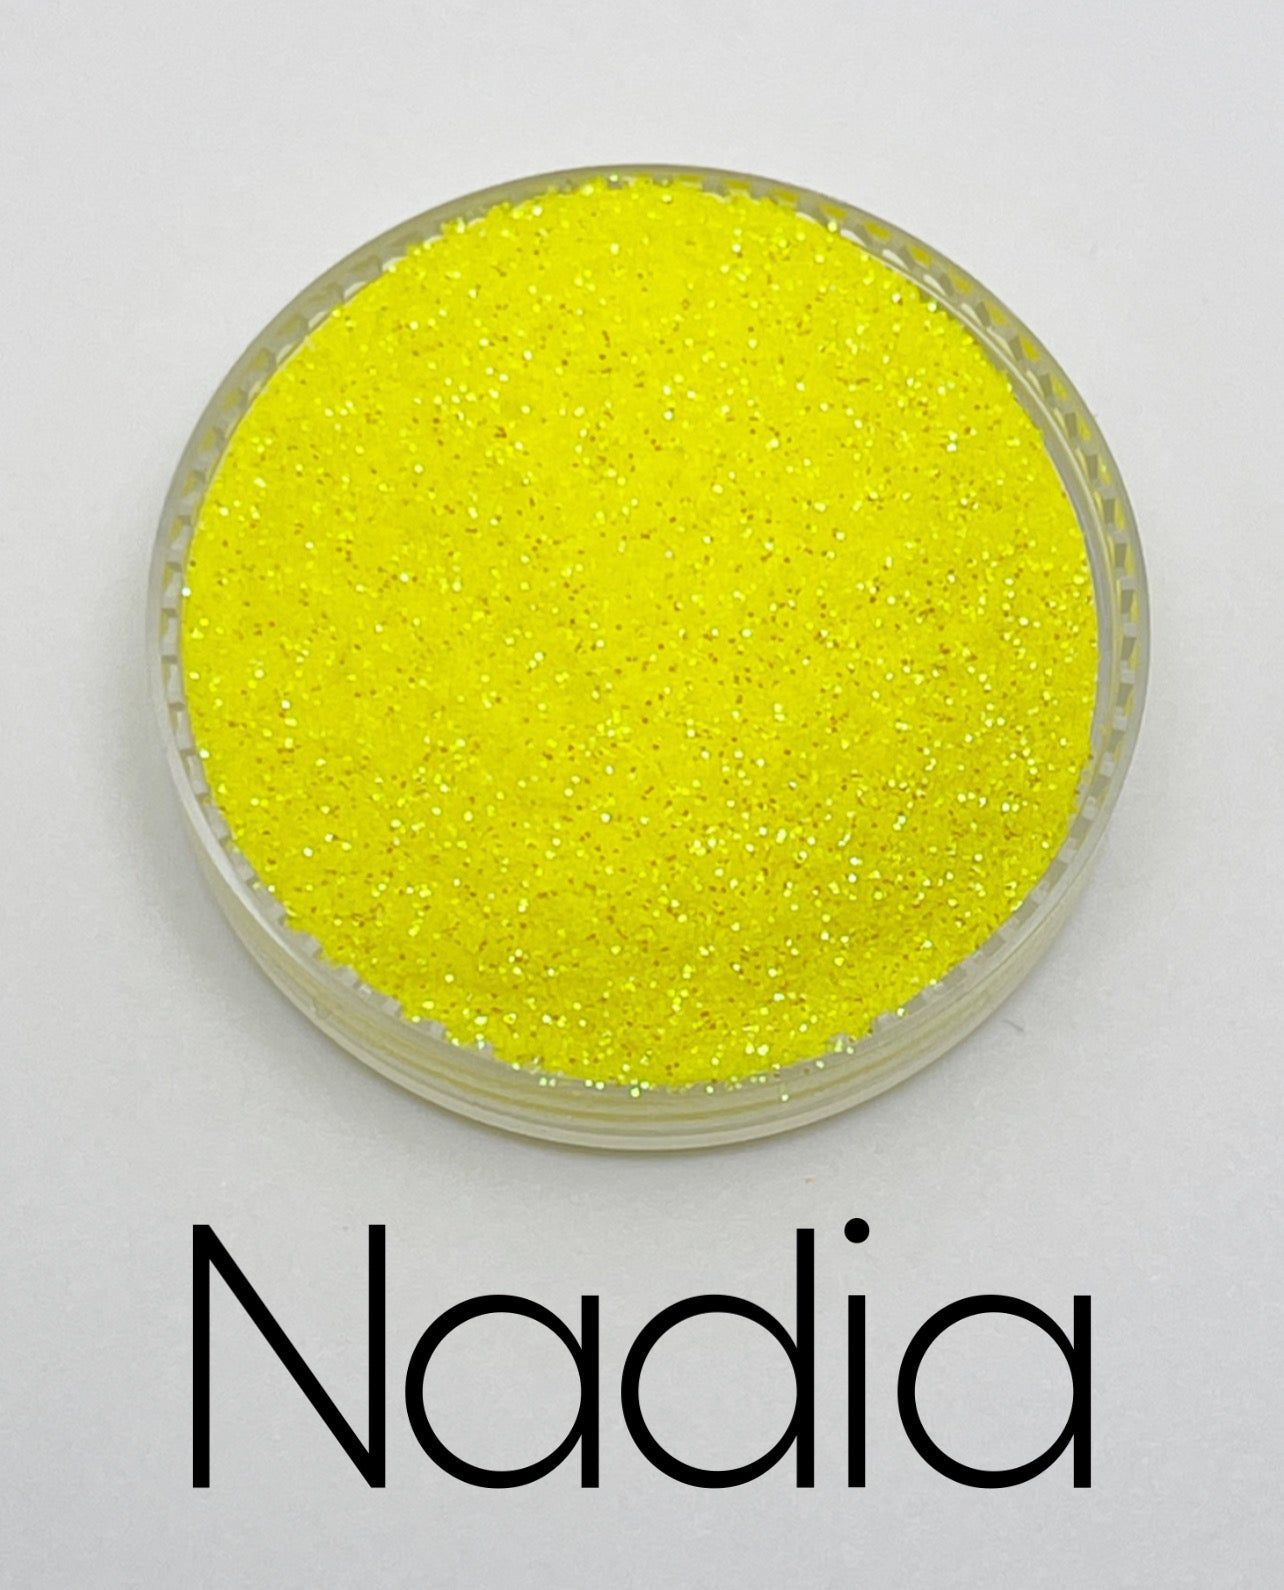 G0592 Nadia Fine